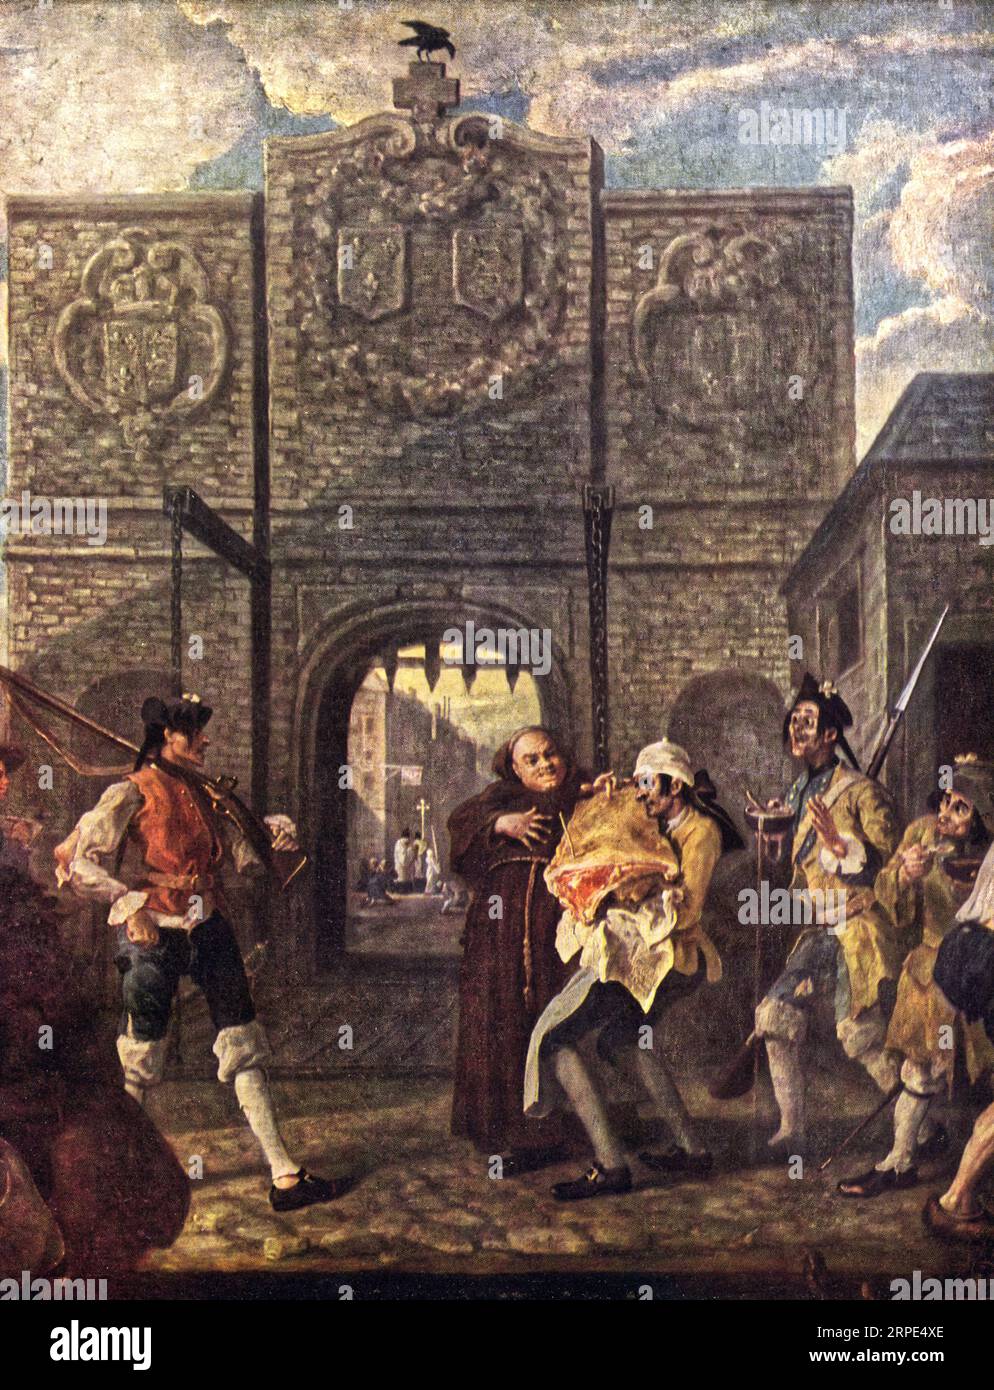 O The Roast Beef of Old England („The Gate of Calais“), 1748. Von William Hogarth (1697-1764). Hogarth produzierte dieses Gemälde nach seiner Rückkehr aus Frankreich, wo er als Spion verhaftet worden war, während er in Calais skizzierte. Die Szene zeigt eine Rindfleischseite, die vom Hafen zu einer englischen Taverne im Hafen transportiert wird, während eine Gruppe unterernährter, zerlumpter französischer Soldaten und ein fetter Mönch hungrig zusehen. Stockfoto